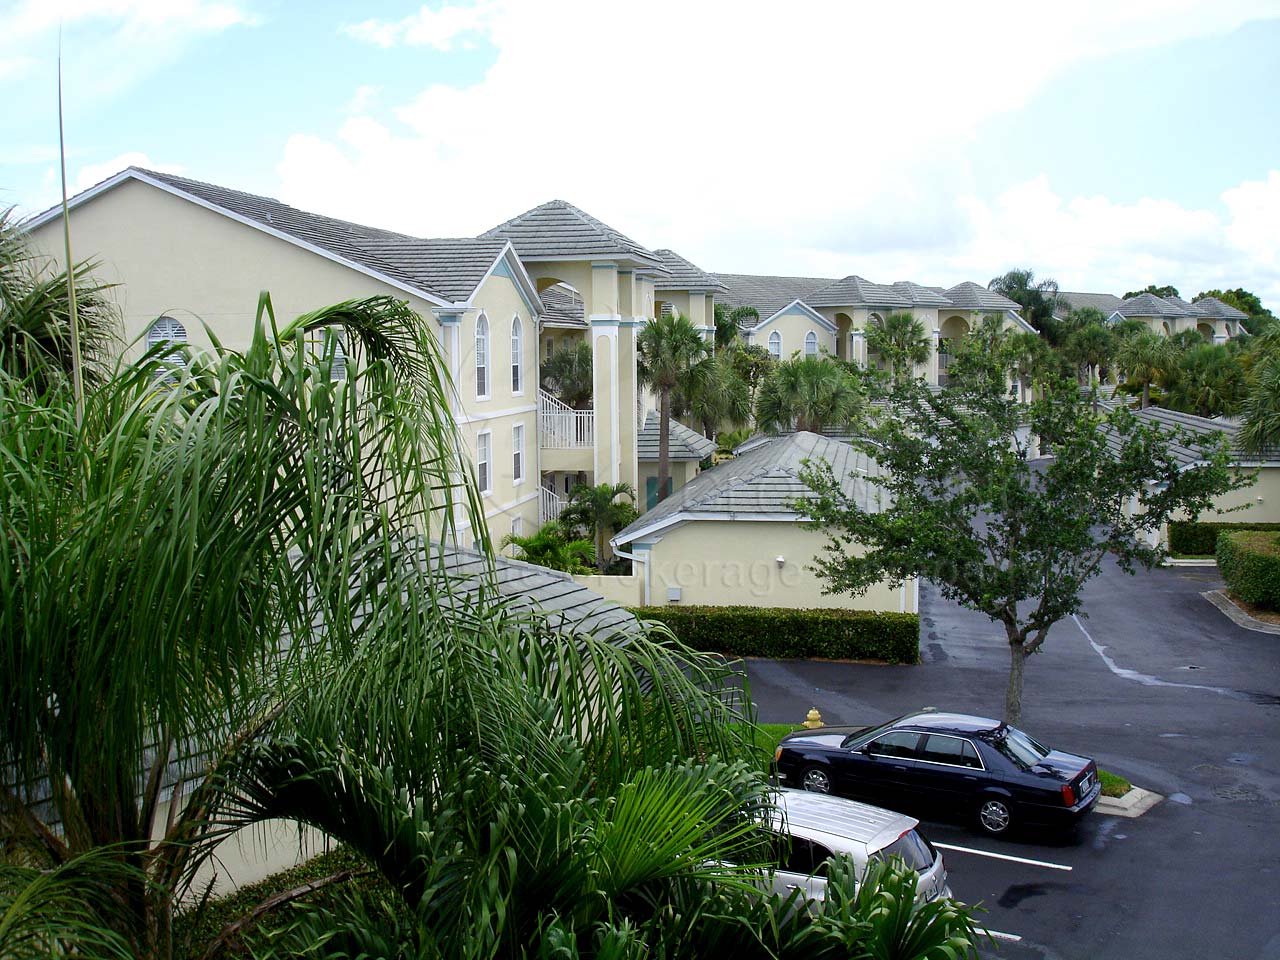 Bermuda Bay Condominiums